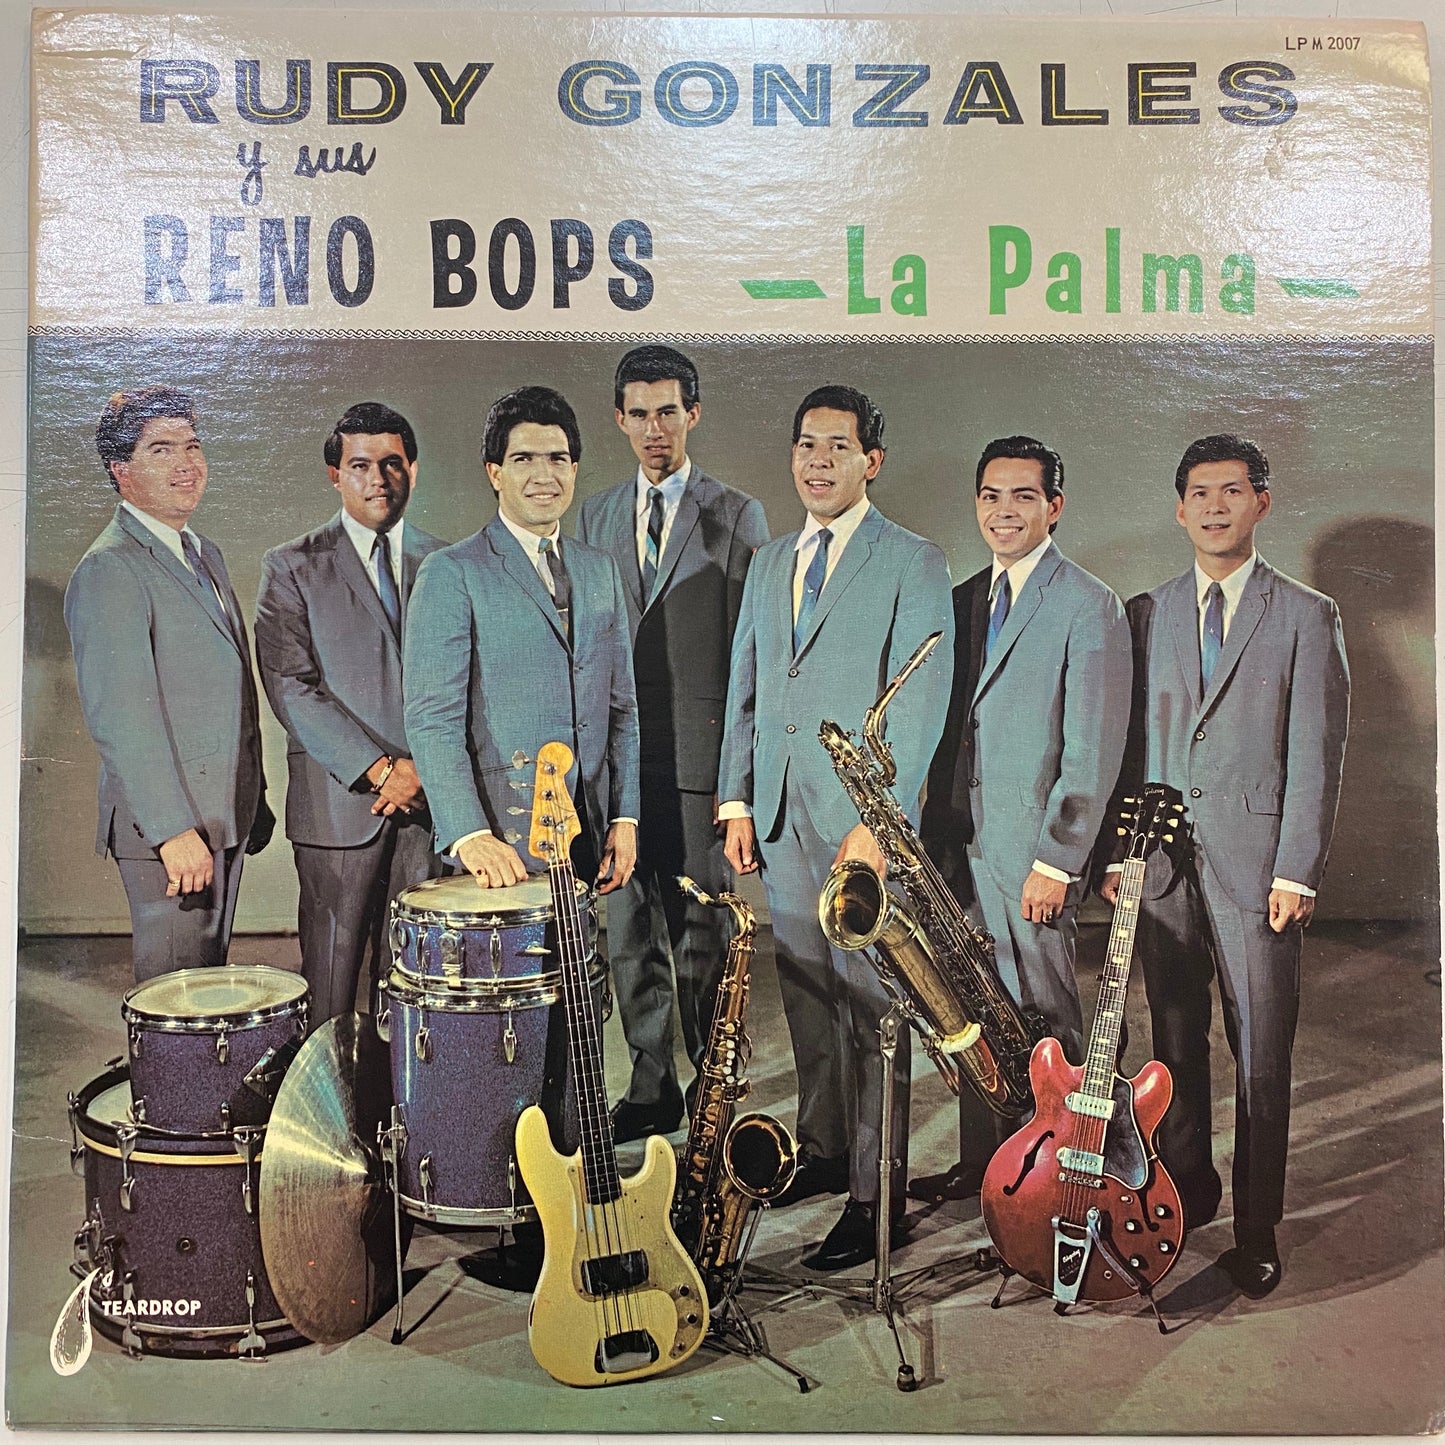 Rudy Gonzales y Sus Reno Bops - La Palma (Vinyl Cover)